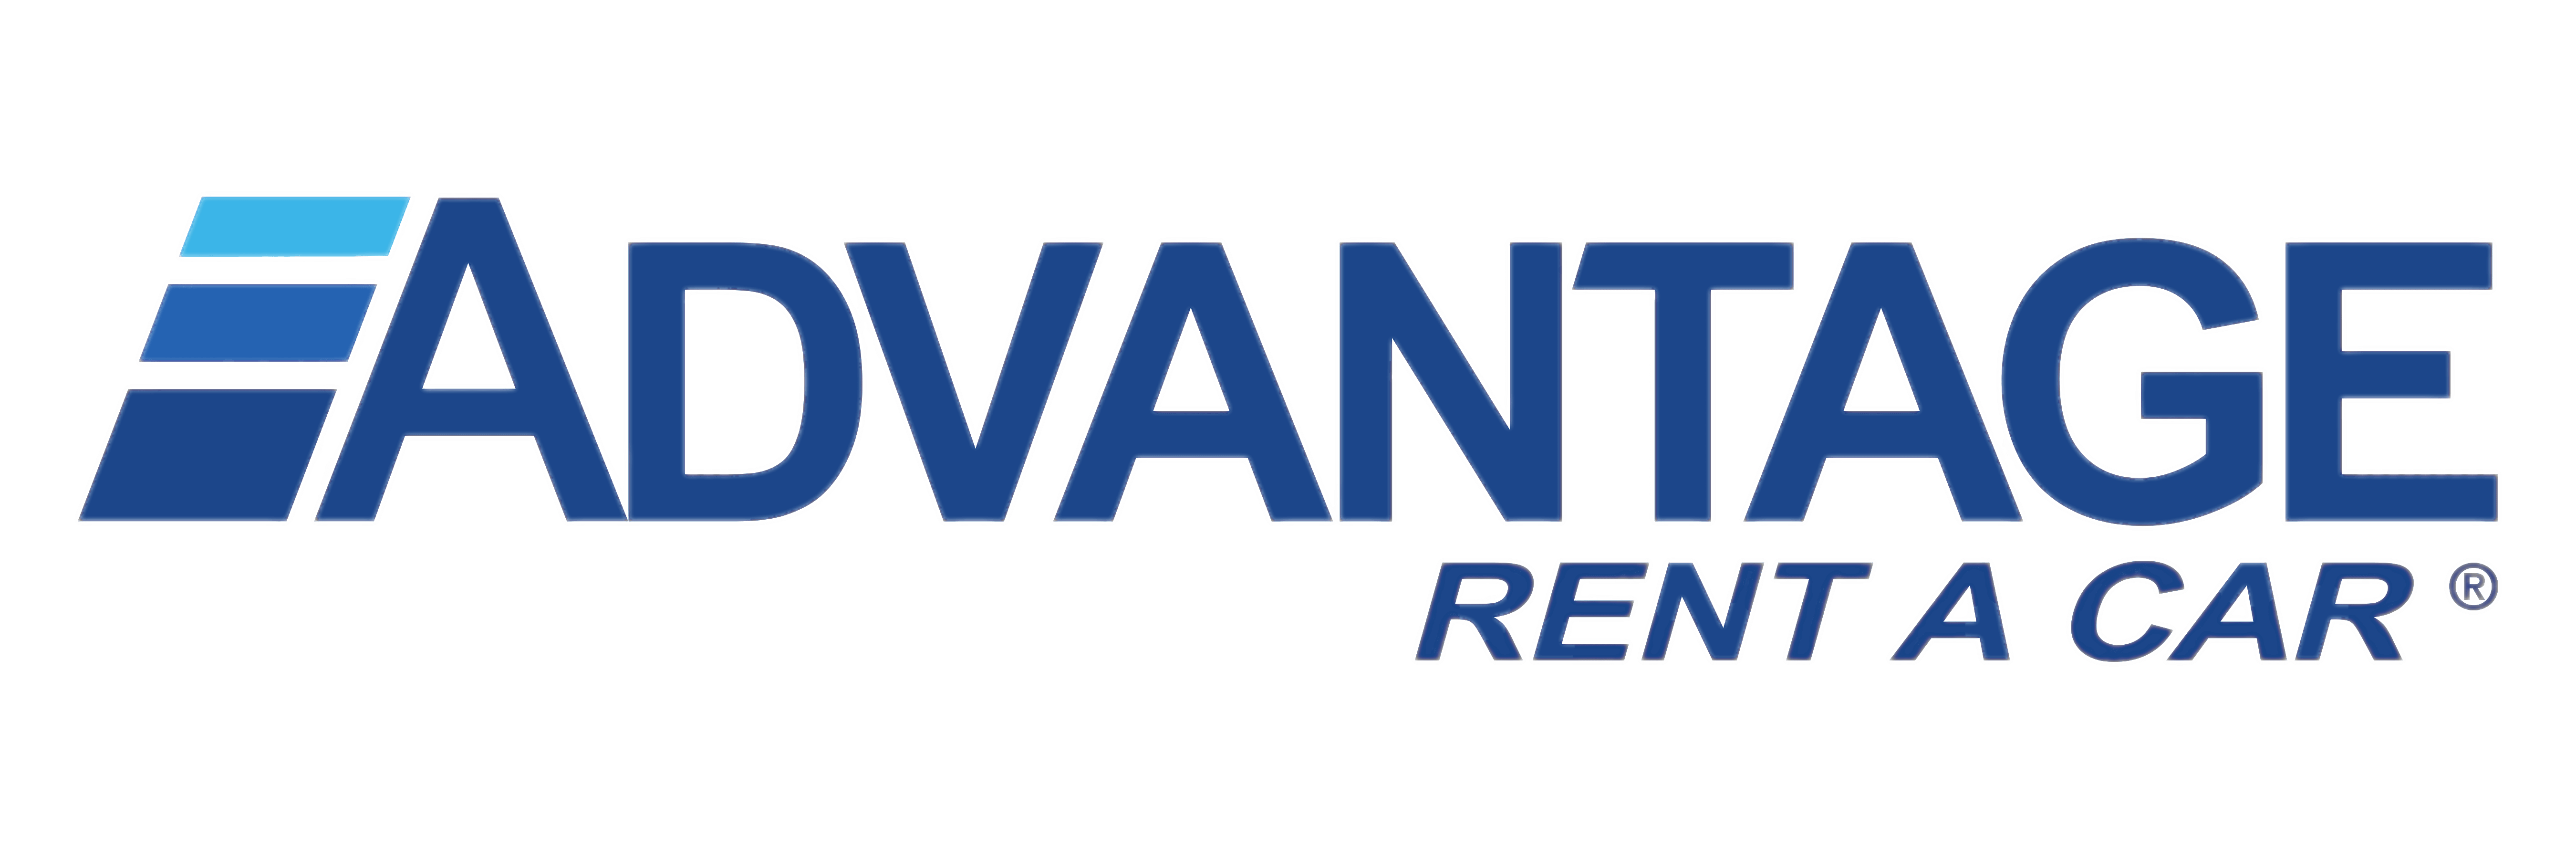 Advantage Logo - Advantage Rent A Car Logo transparent PNG